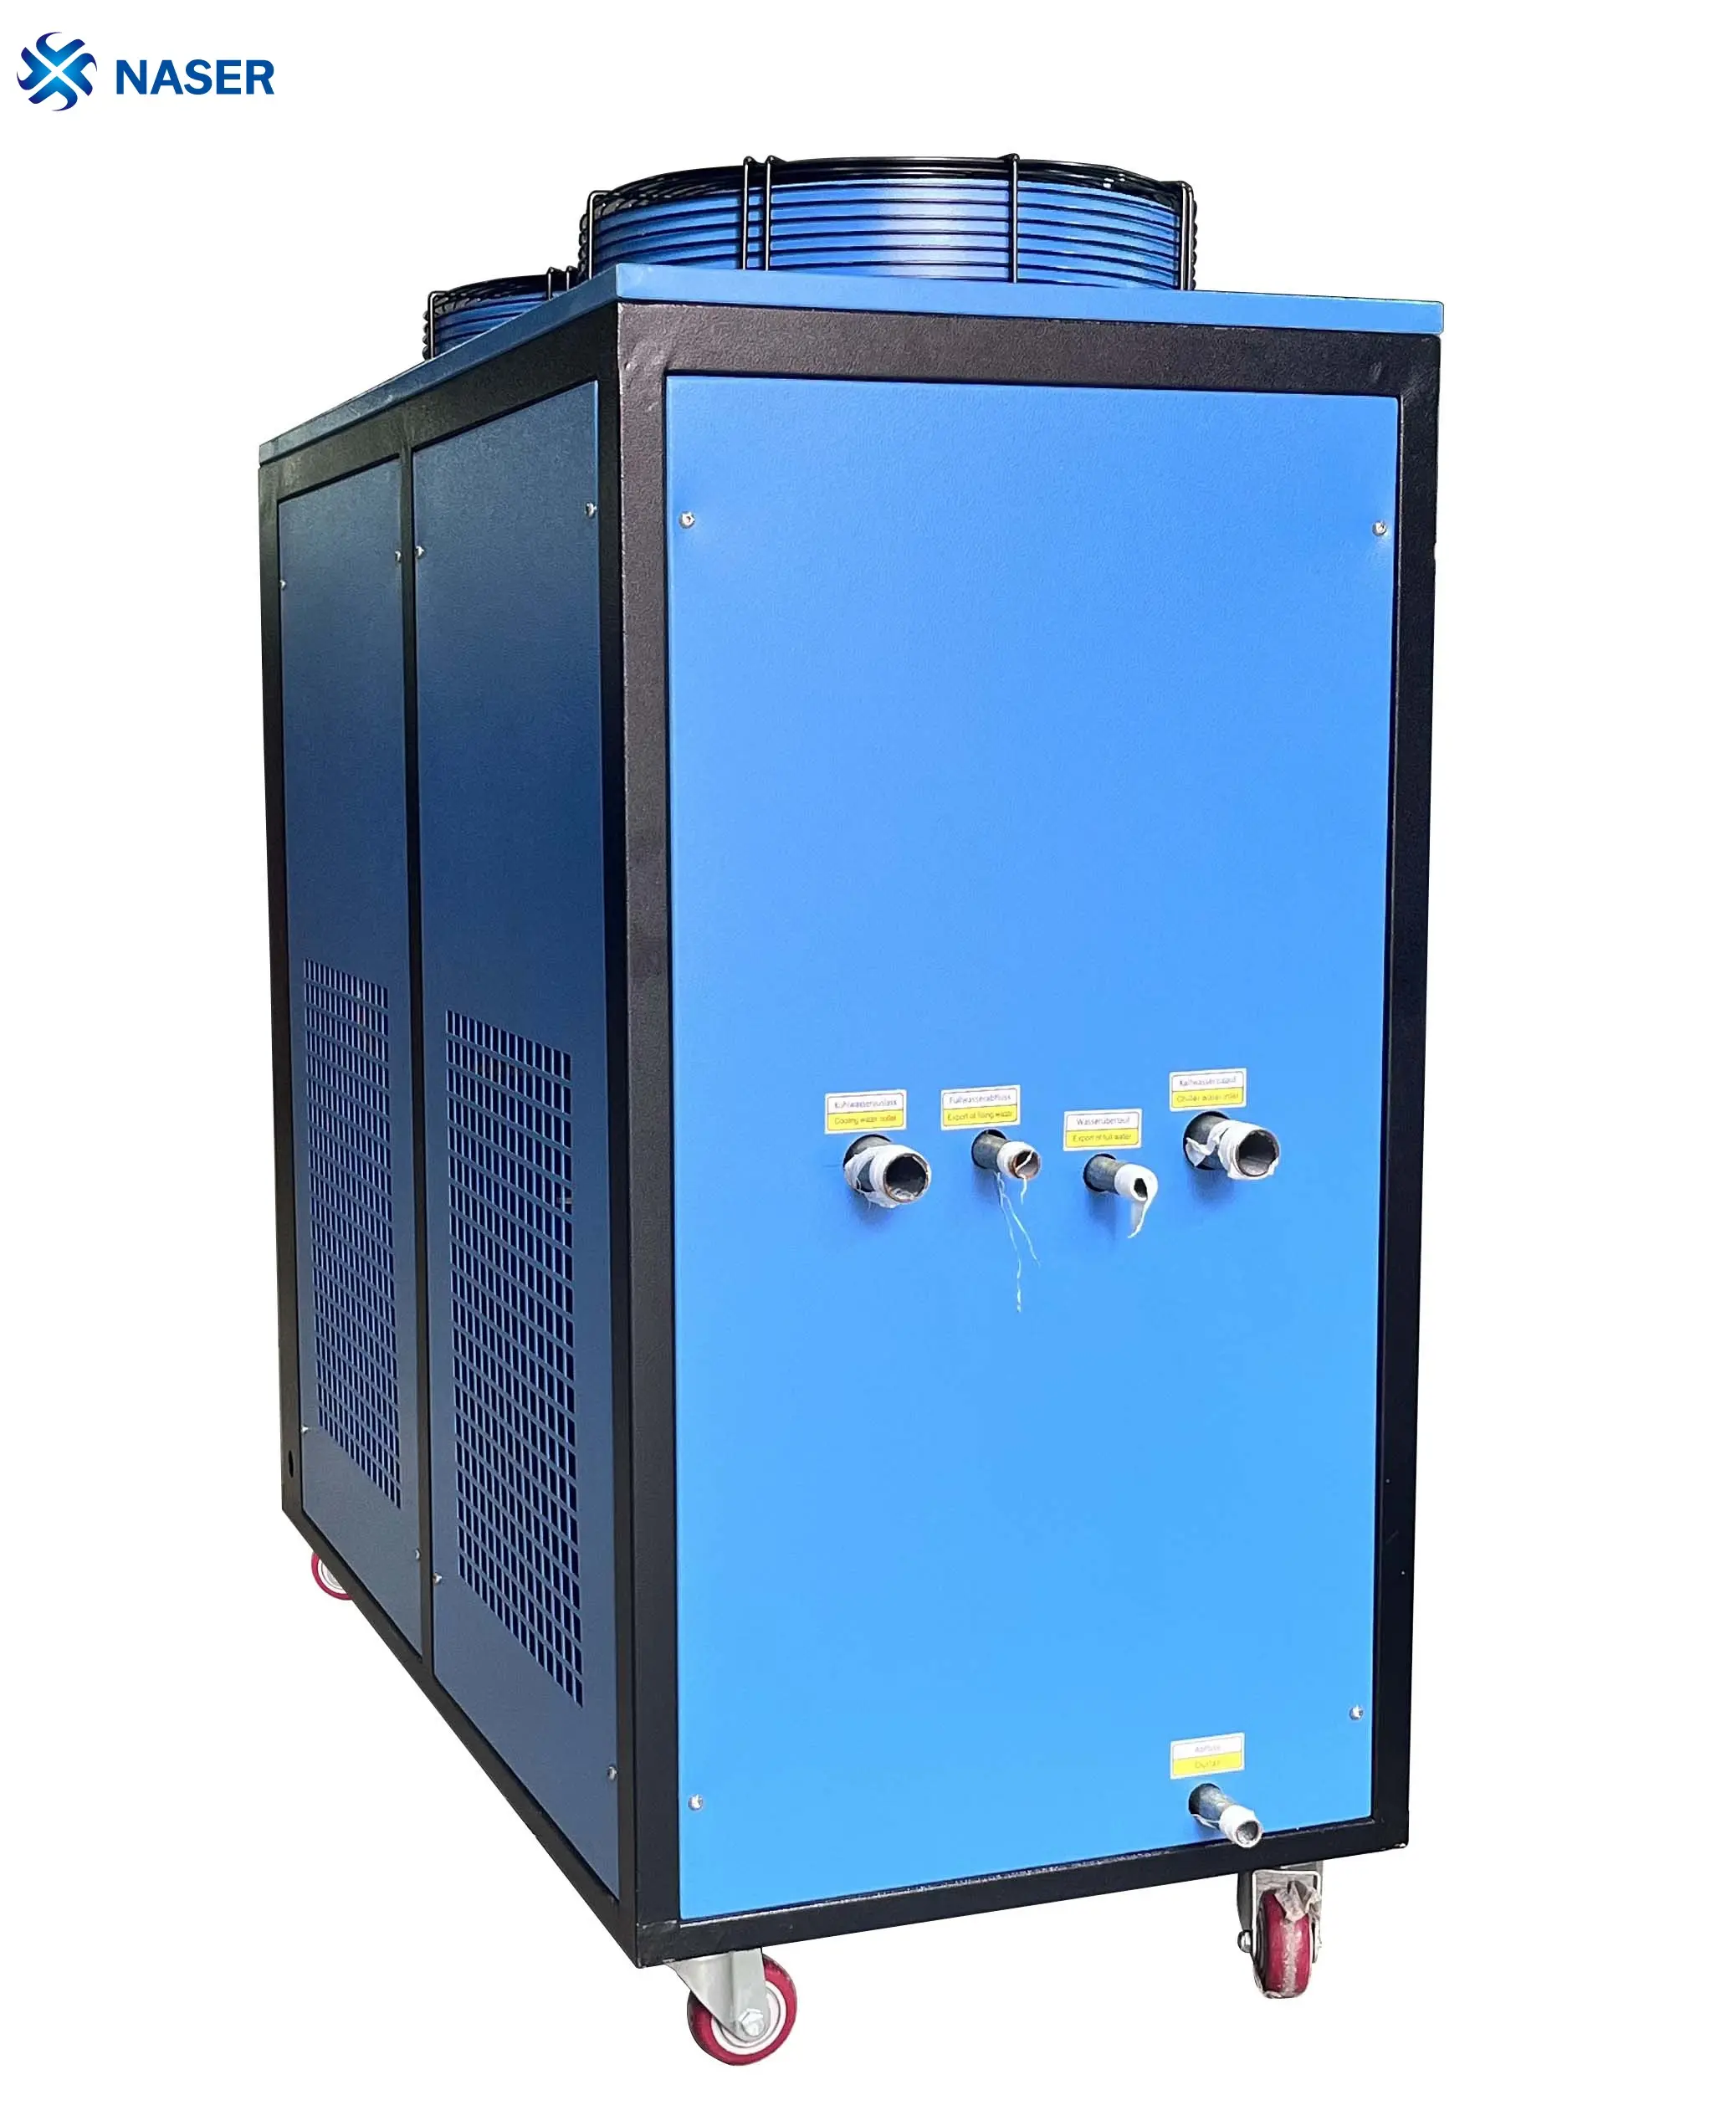 Sistema di raffreddamento ad aria Colombia refrigeratore d'acqua 5 hp piccolo refrigeratore raffreddato ad aria